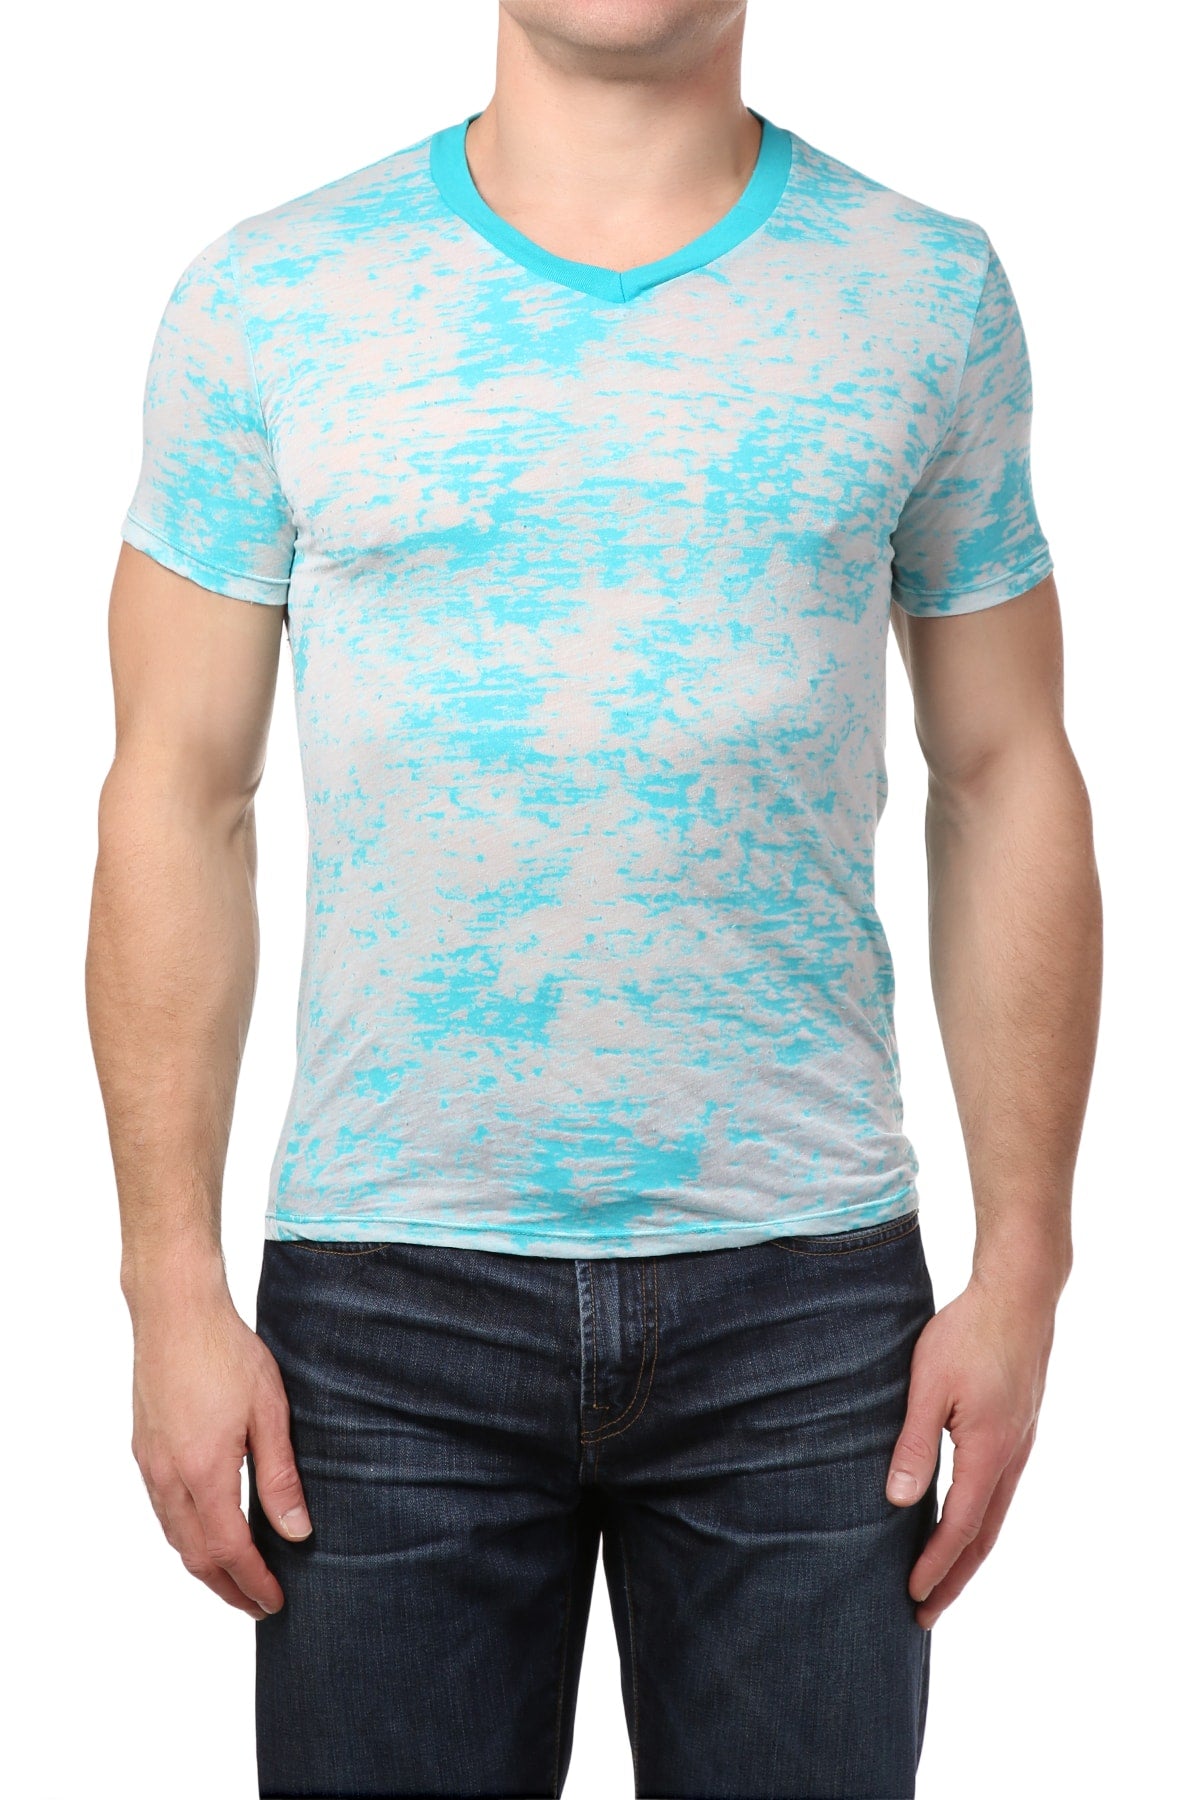 Y.M.L.A. Turquoise Burnout T-Shirt